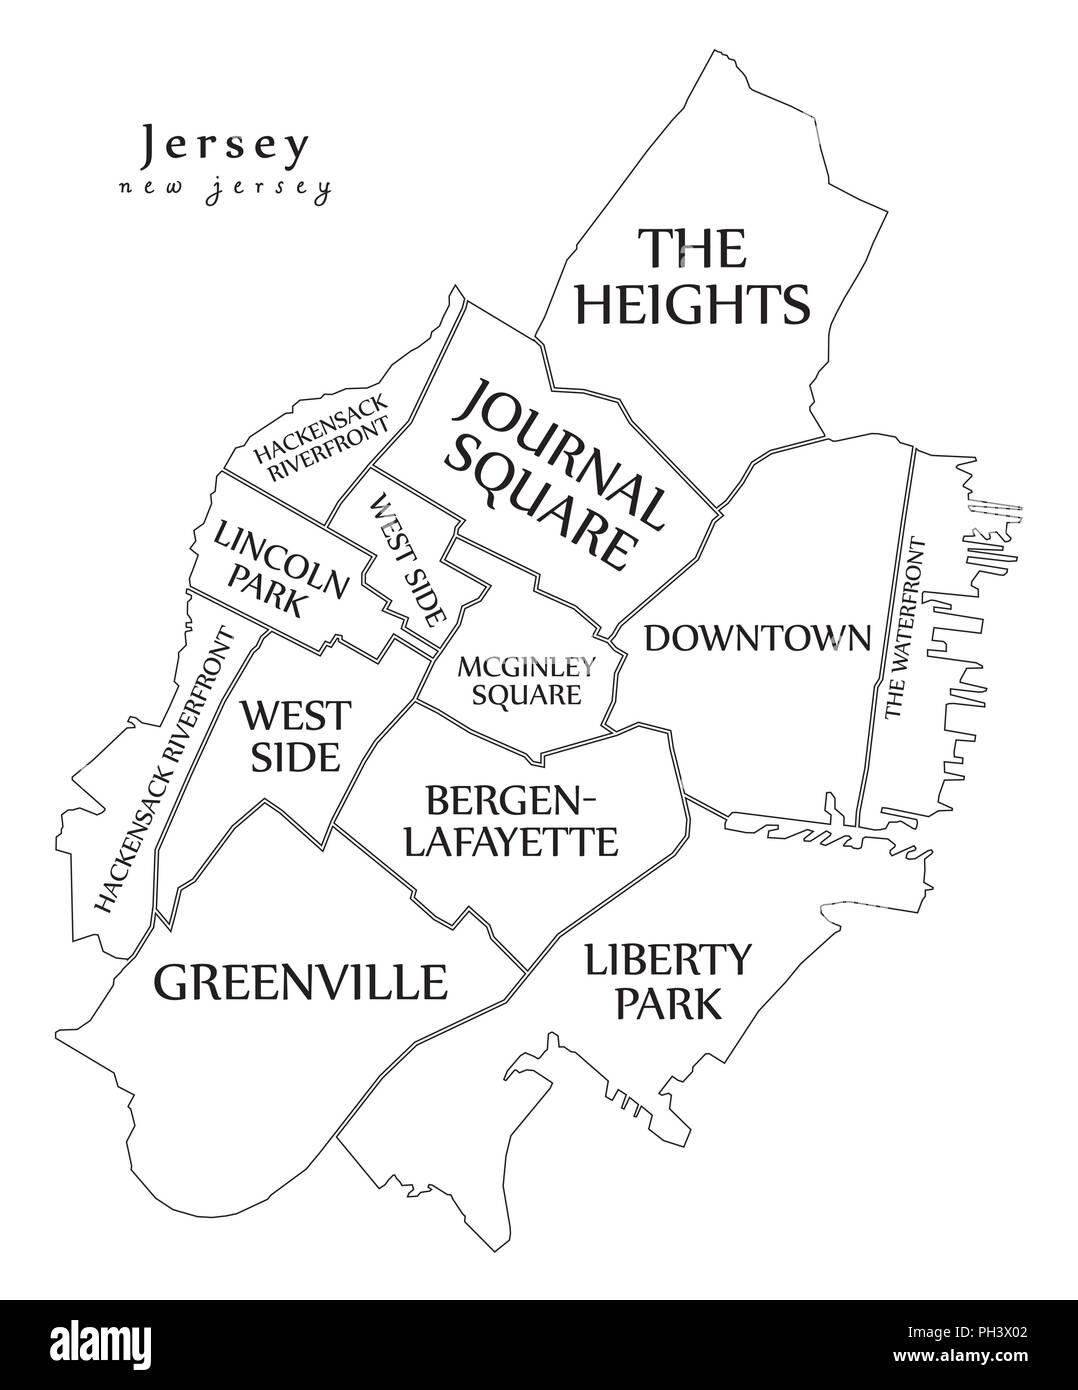 Moderne Stadtplan - Jersey New Jersey City der USA mit Nachbarschaften und Titel Übersichtskarte Stock Vektor